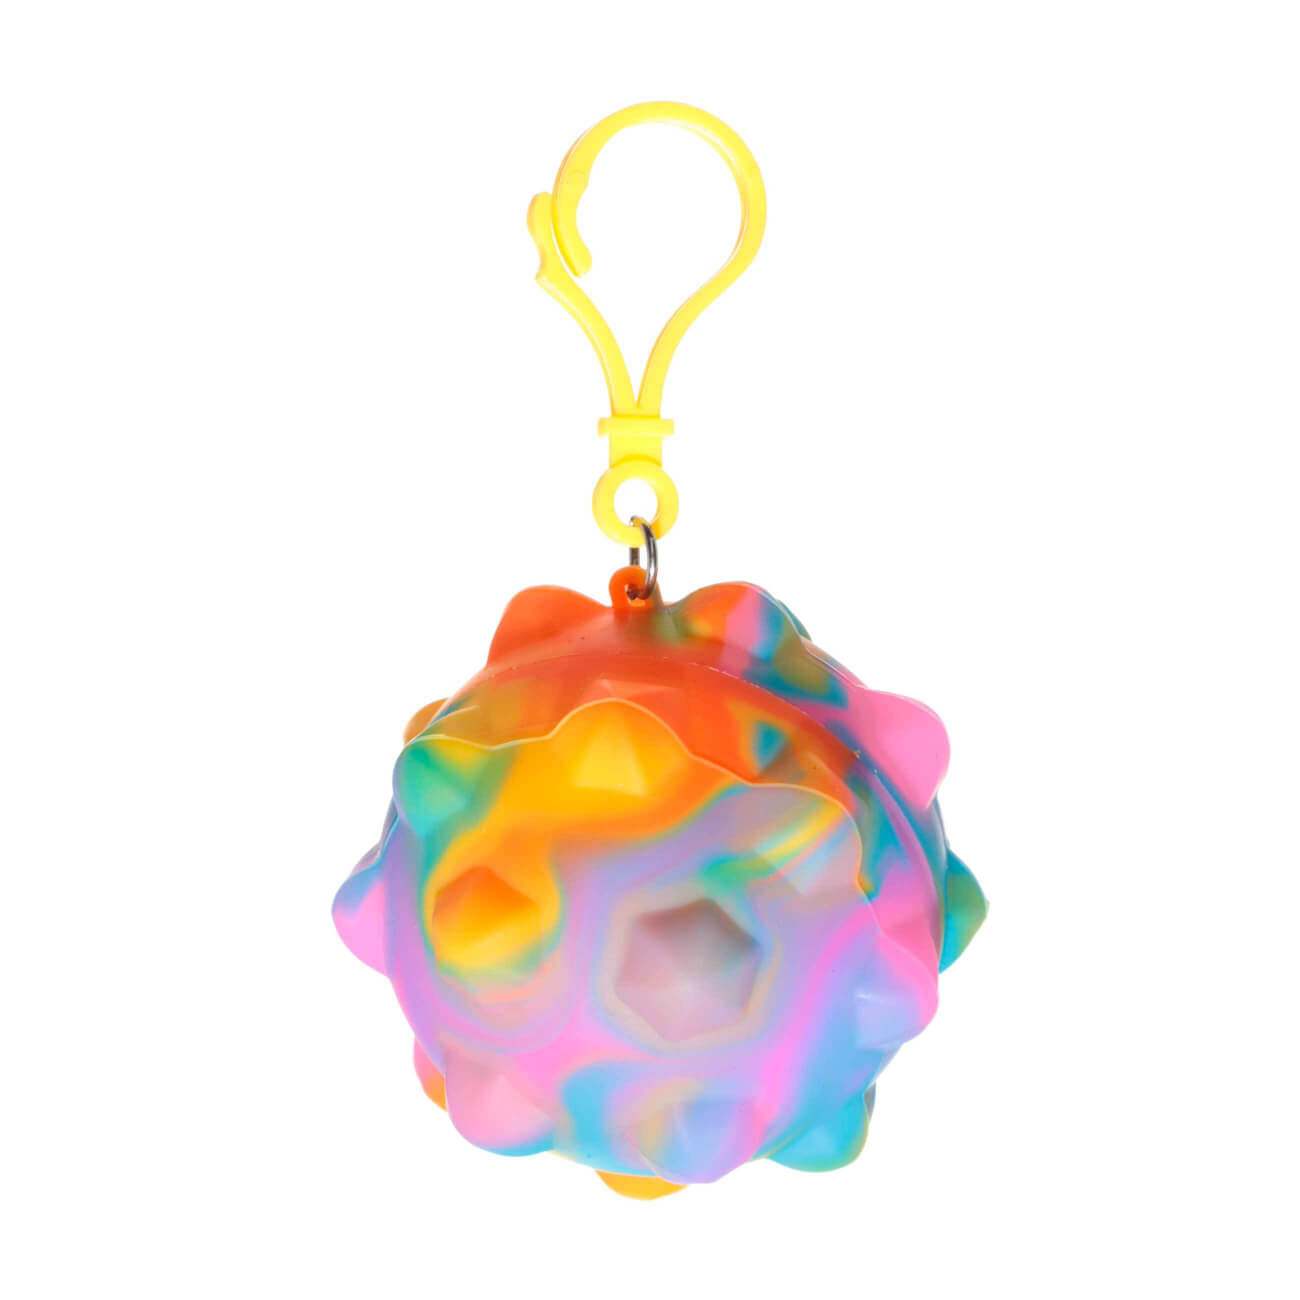 Игрушка-антистресс Pop-it, 6x6 см, силикон, цветная, Брелок мяч, Pop-it игрушка антистресс шар 7 см меняет микс